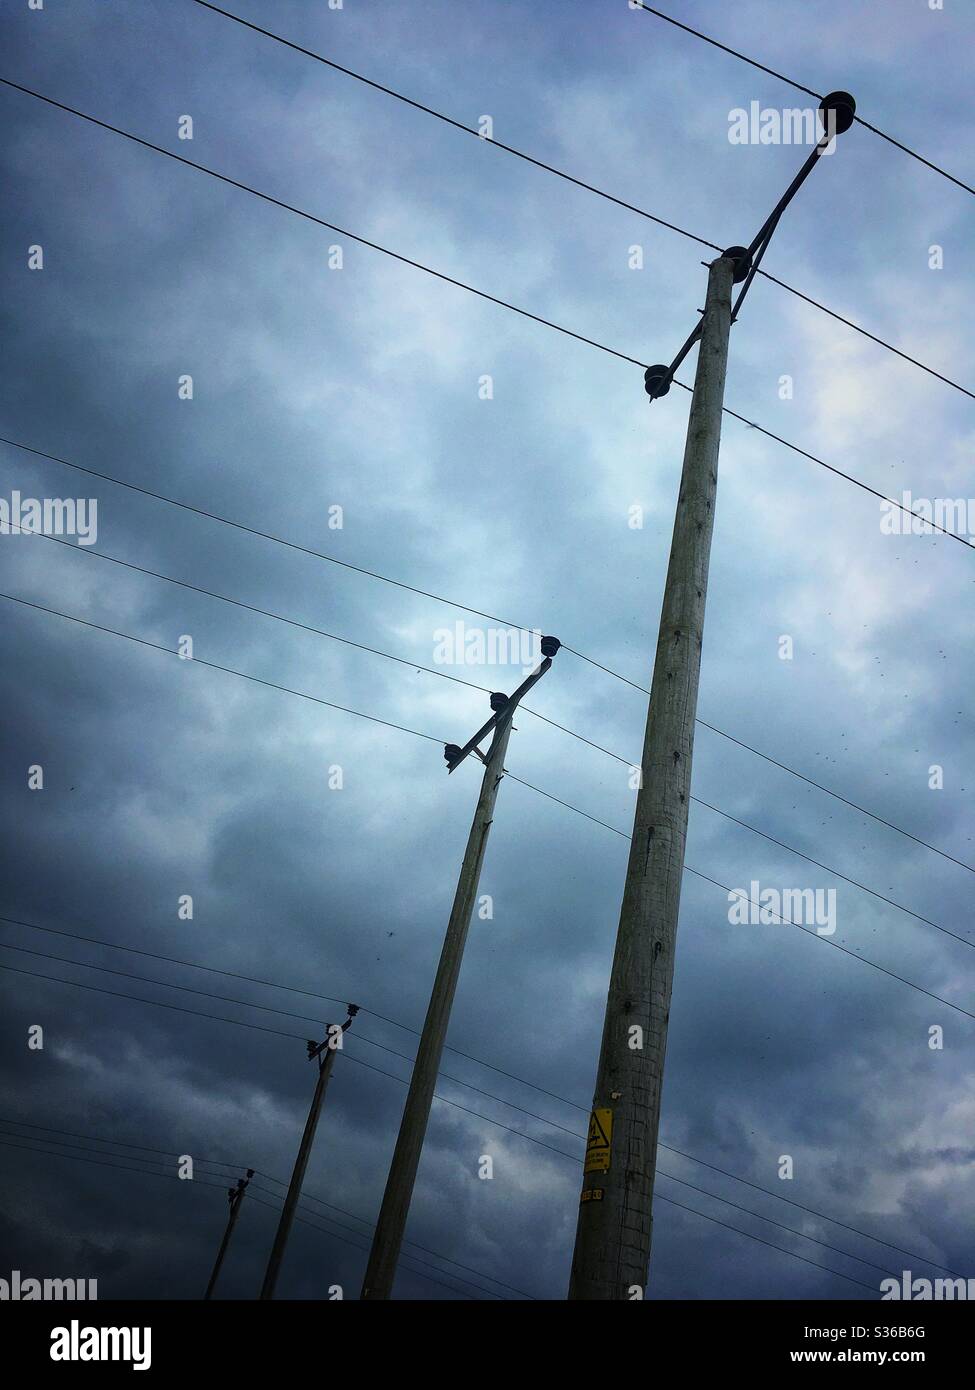 4 polos eléctricos en fila Fotografía de stock - Alamy